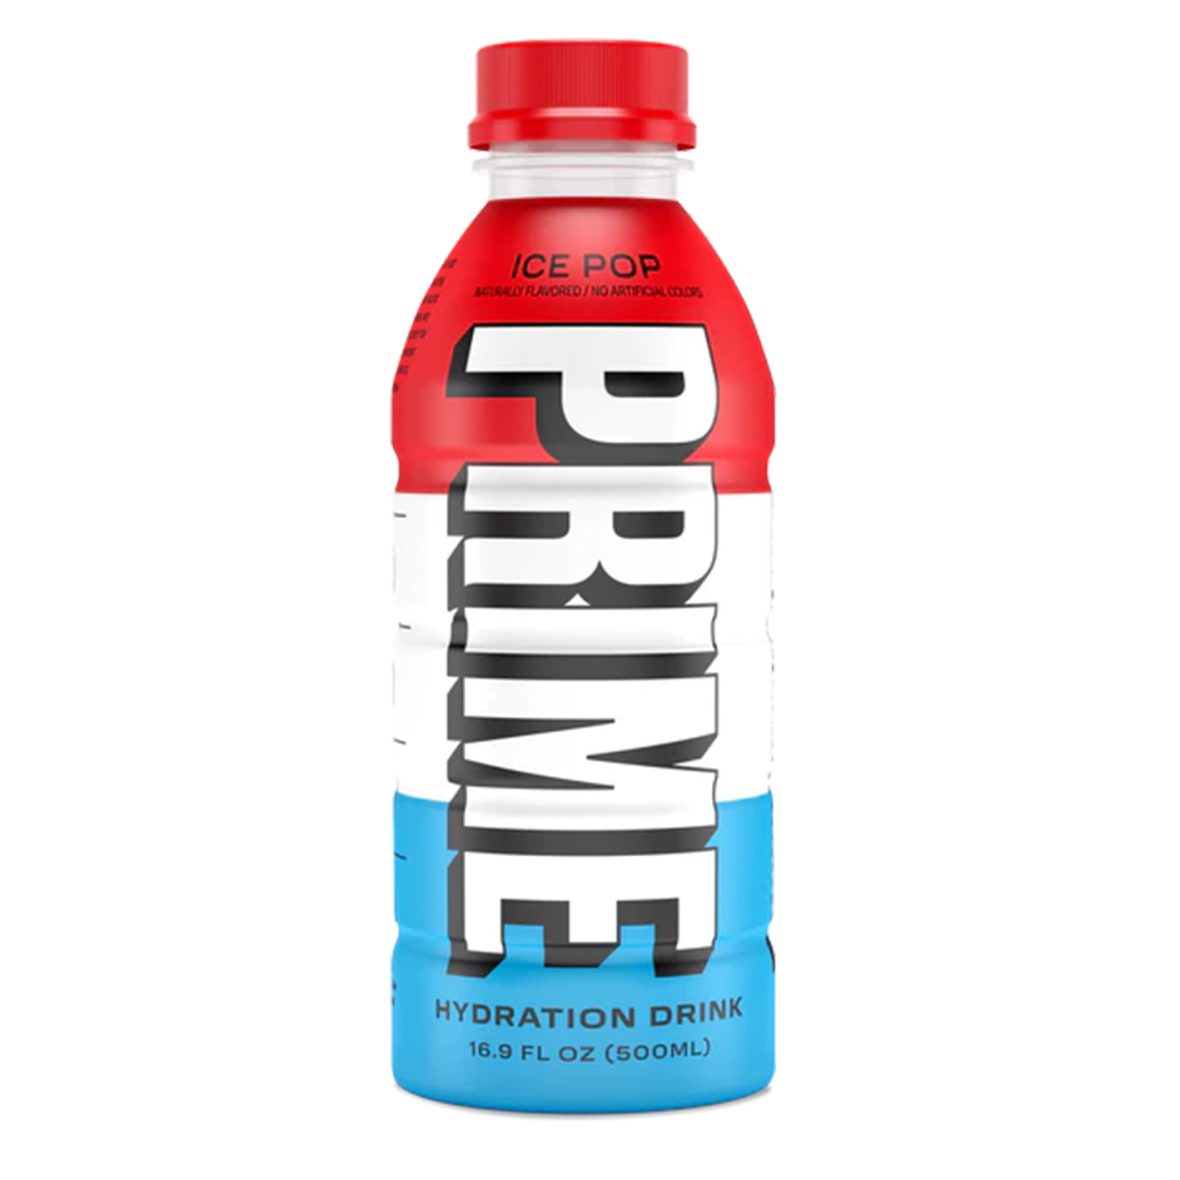 Ενεργειακό Ποτό Για Ενυδάτωση Prime Hydration Drink Ice Pop 500ml